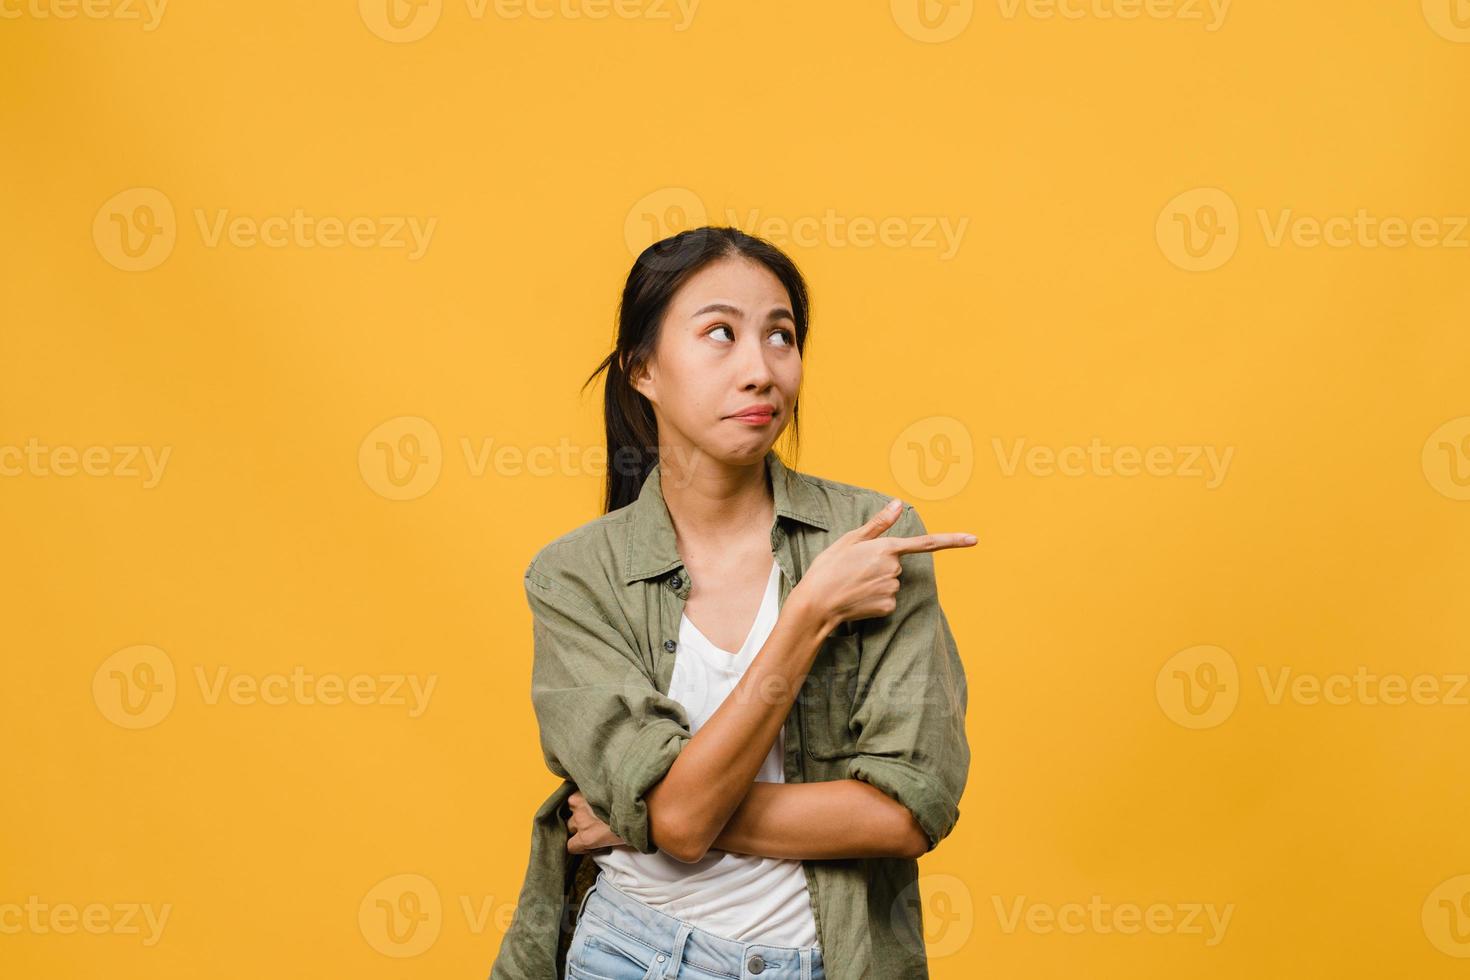 Joven mujer asiática muestra algo sorprendente en el espacio en blanco con expresión negativa, gritos emocionados, llorando enojado emocional en ropa casual aislada sobre fondo amarillo. concepto de expresión facial. foto